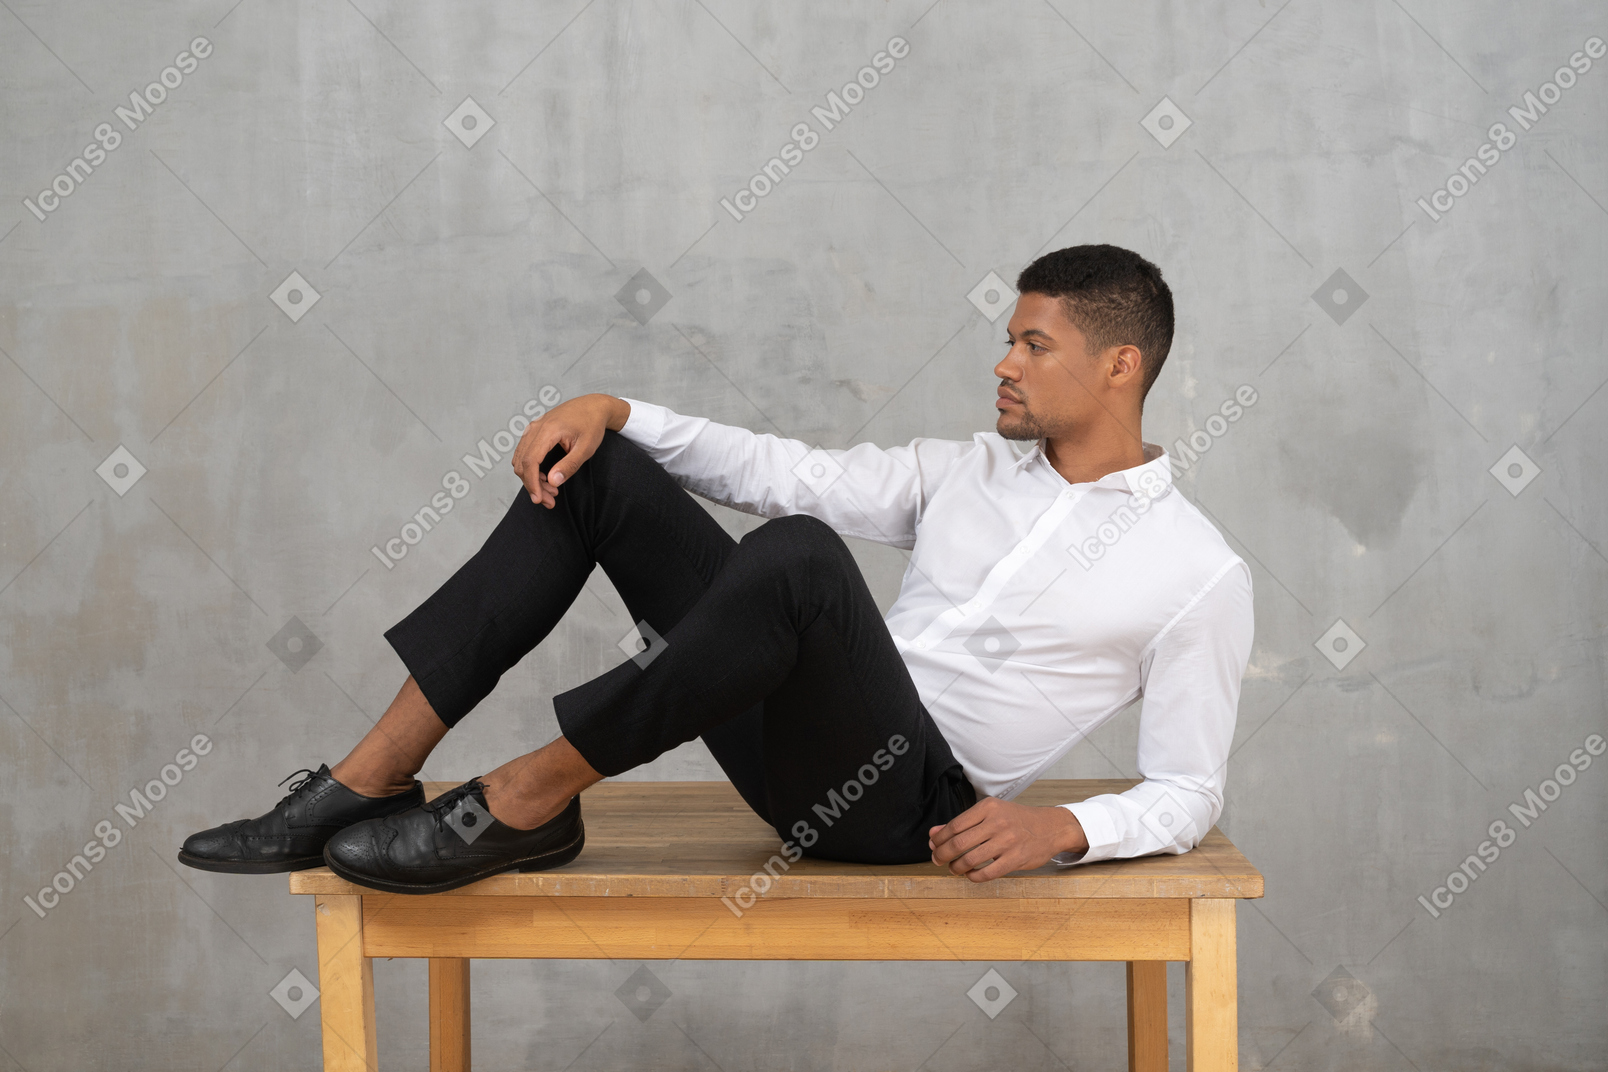 Mann in formeller kleidung, der auf einem tisch liegt